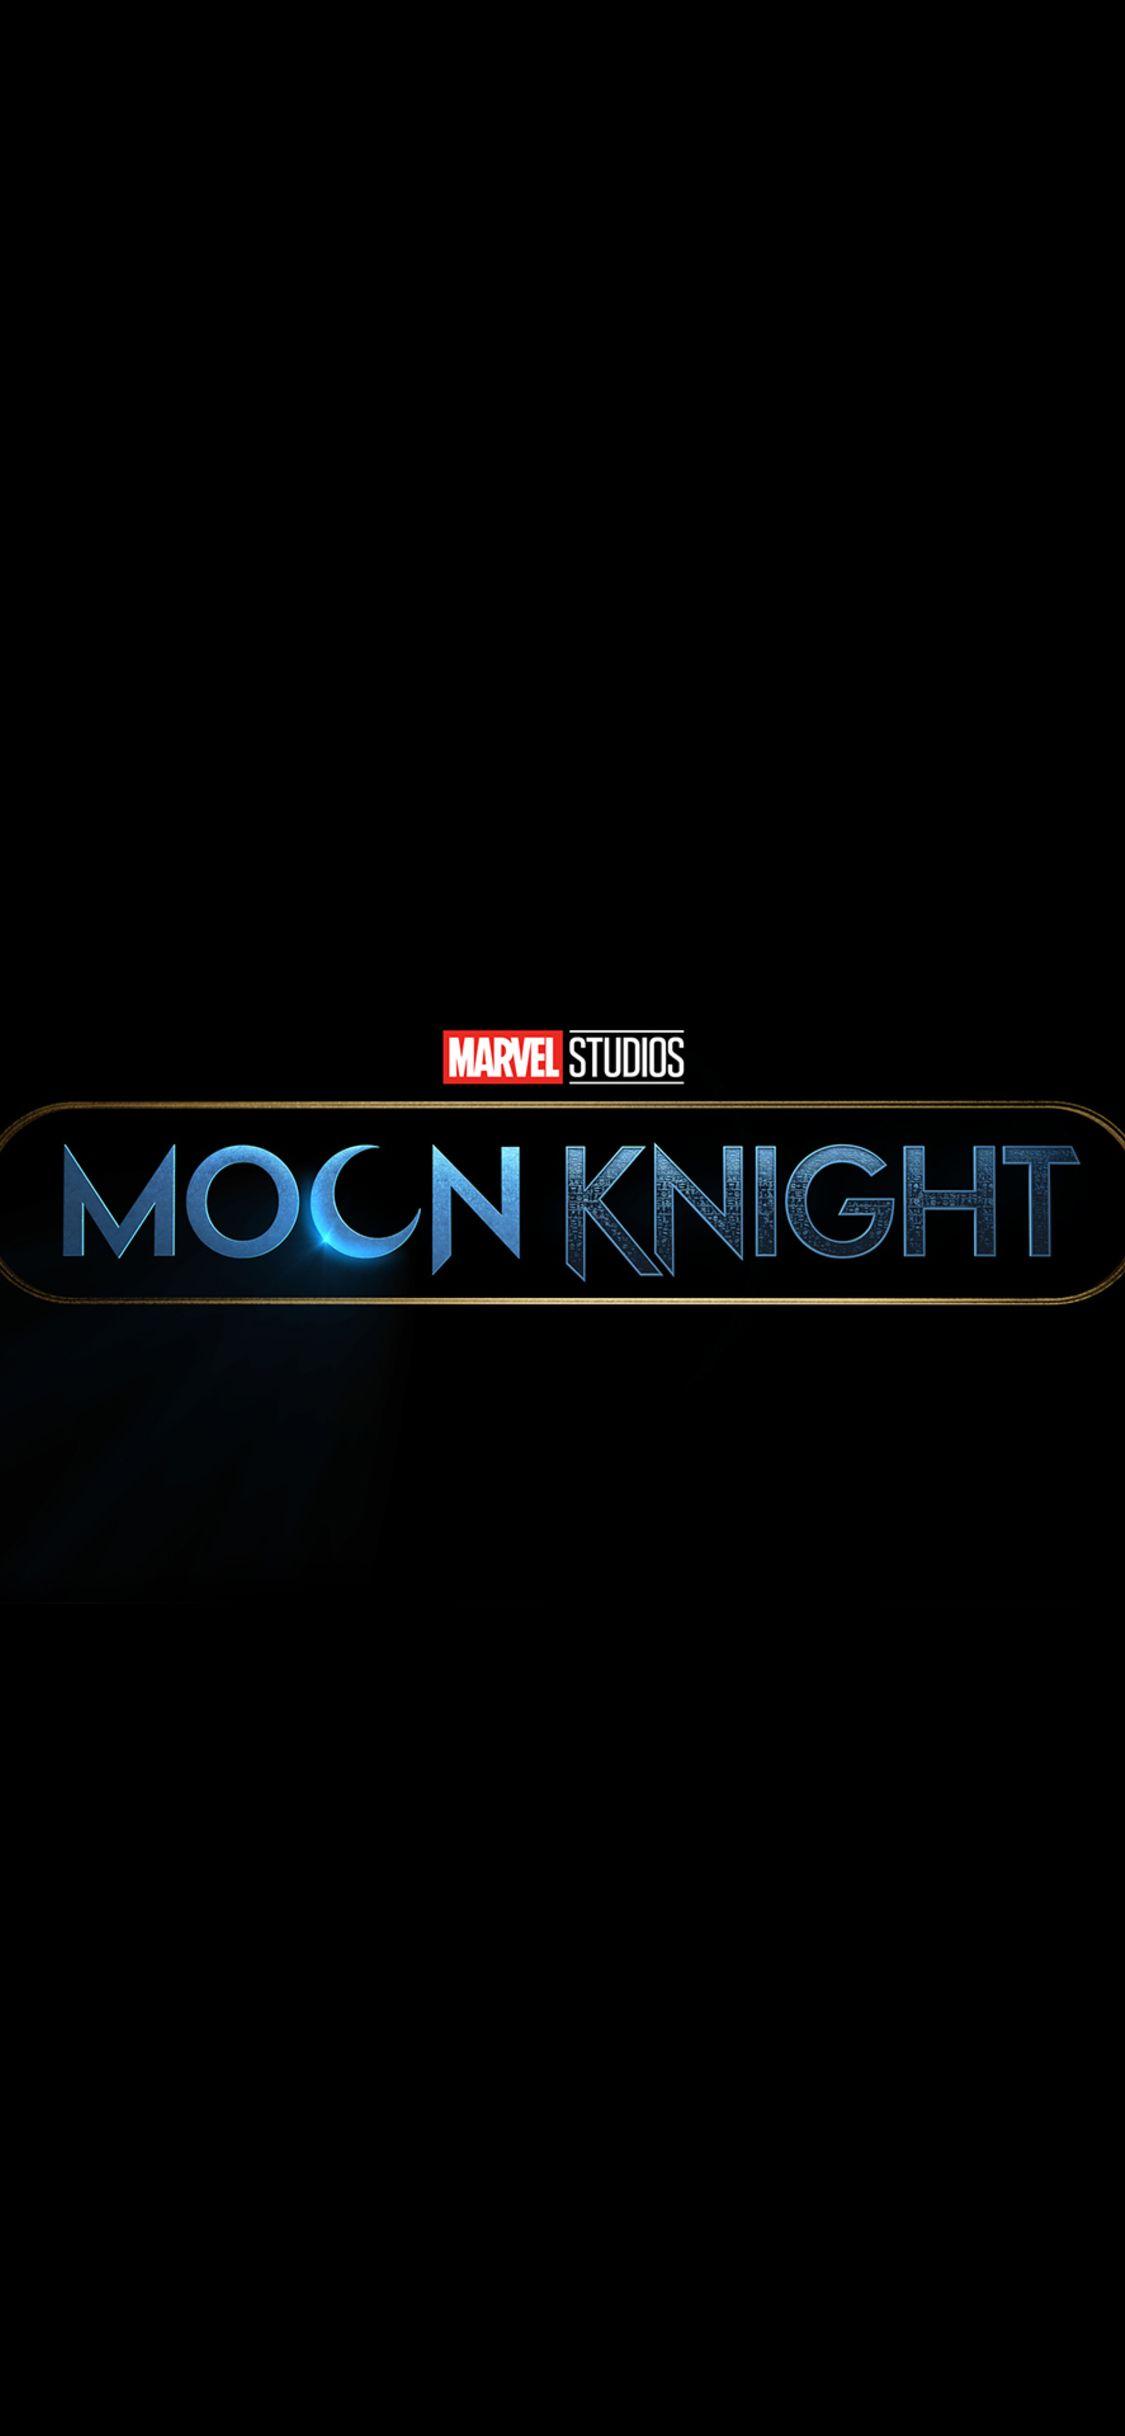 Kaaaem on X: My new Moon Knight iPhone wallpaper #MoonKnight   / X